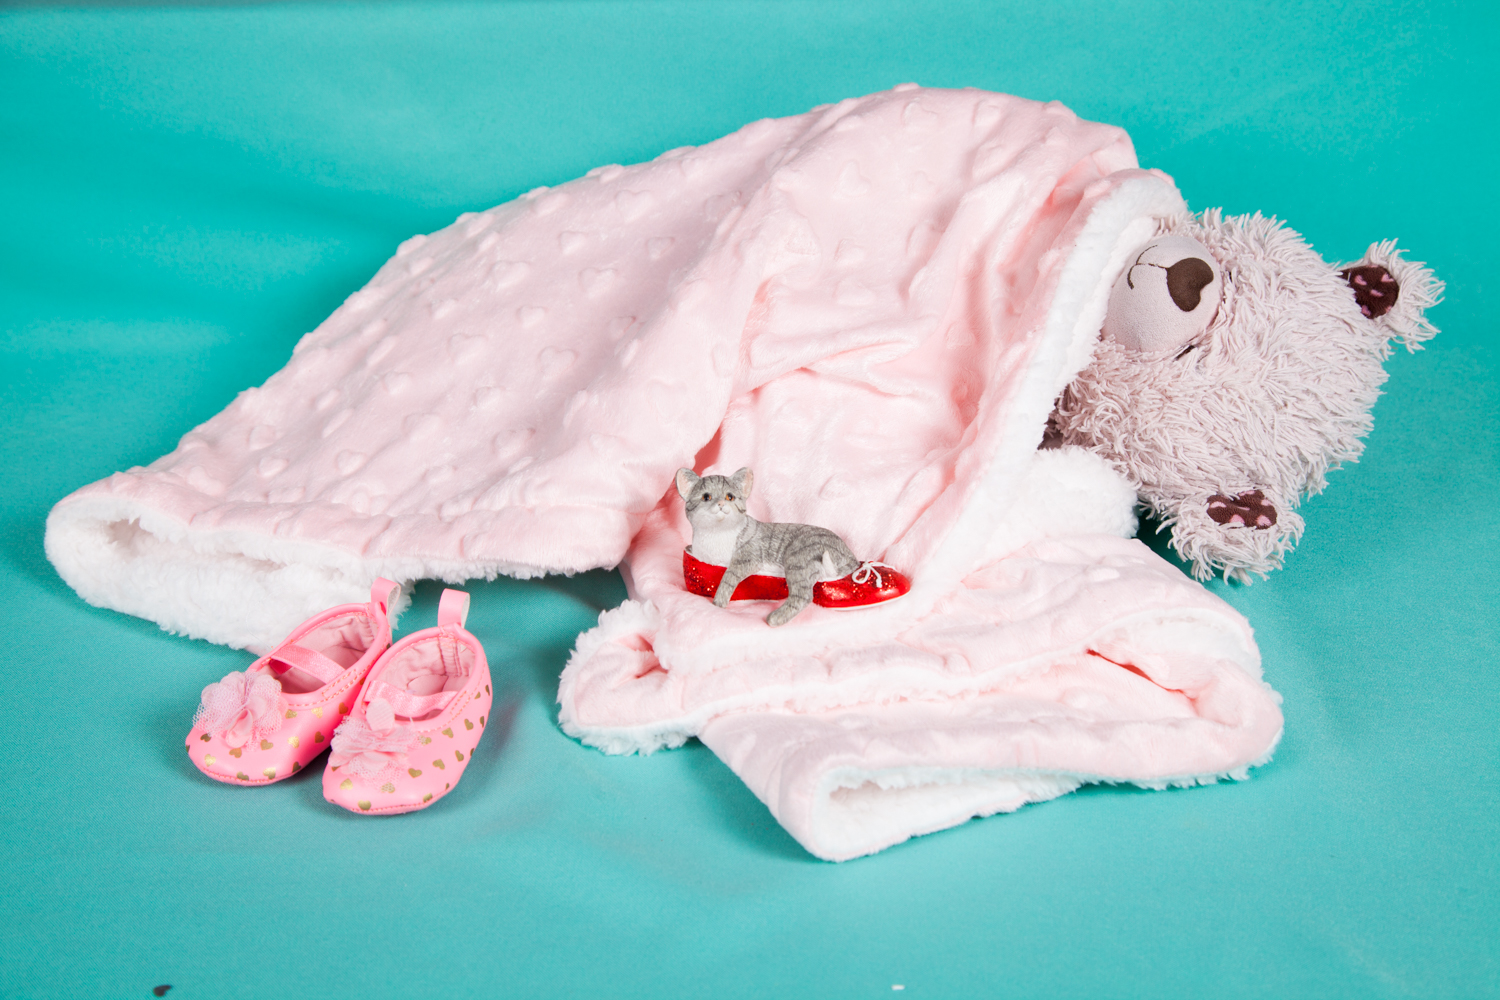 Stuffed Animal Sleepover 2019 | Uncustomary